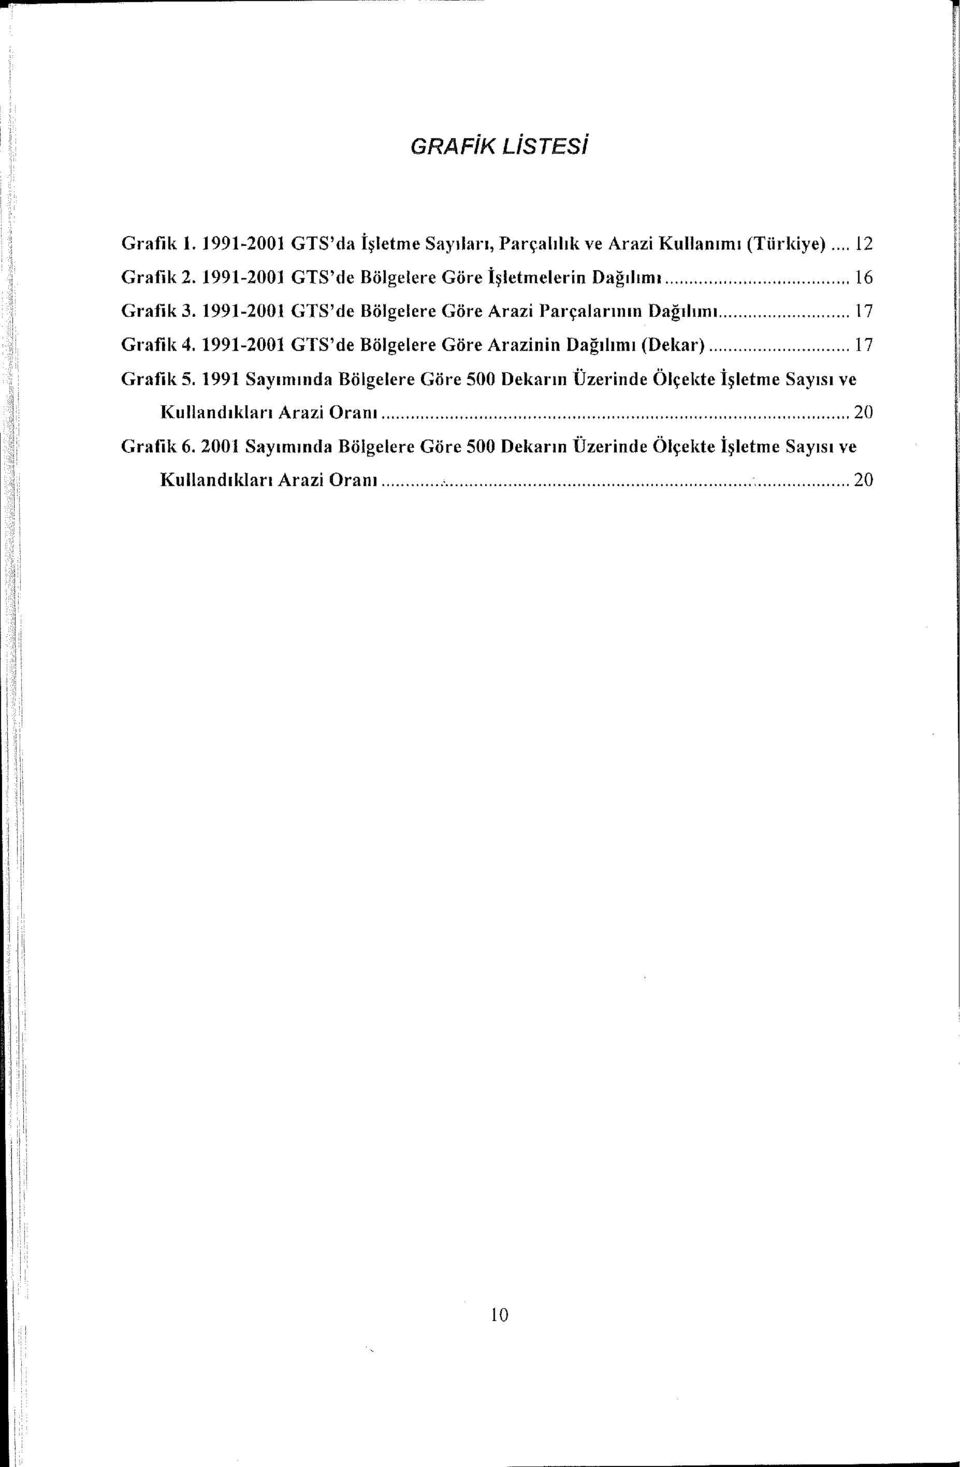 1991-2001 GTS'de Bölgelere Göre Arazinin Dağılımı (Dekar)... 17 Grafik 5.